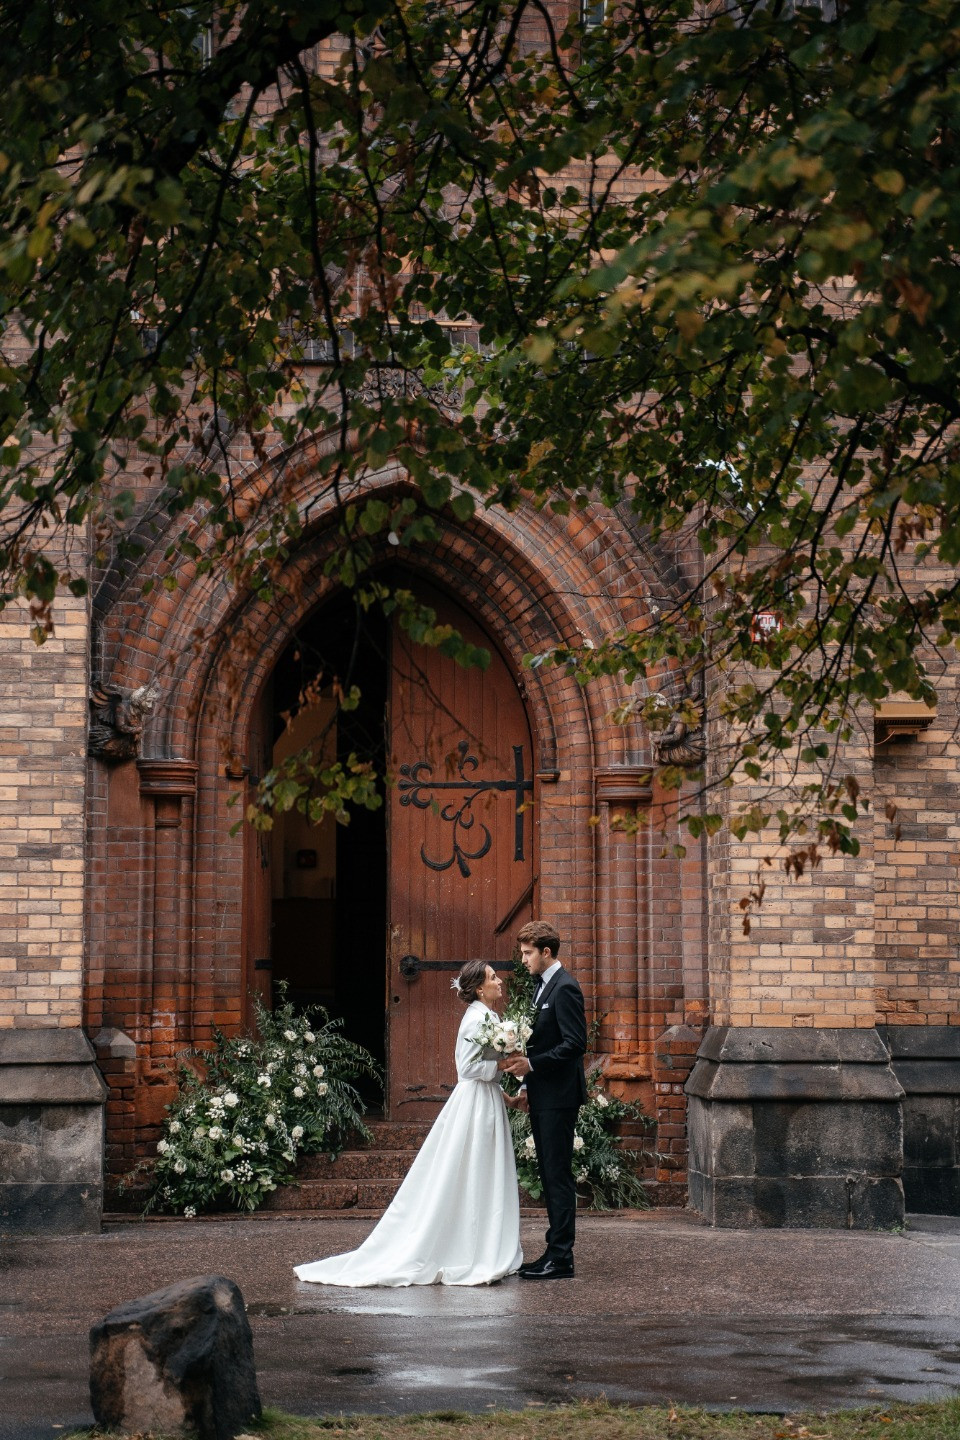 Church wedding: стилизованная фотосессия в Англиканской церкви